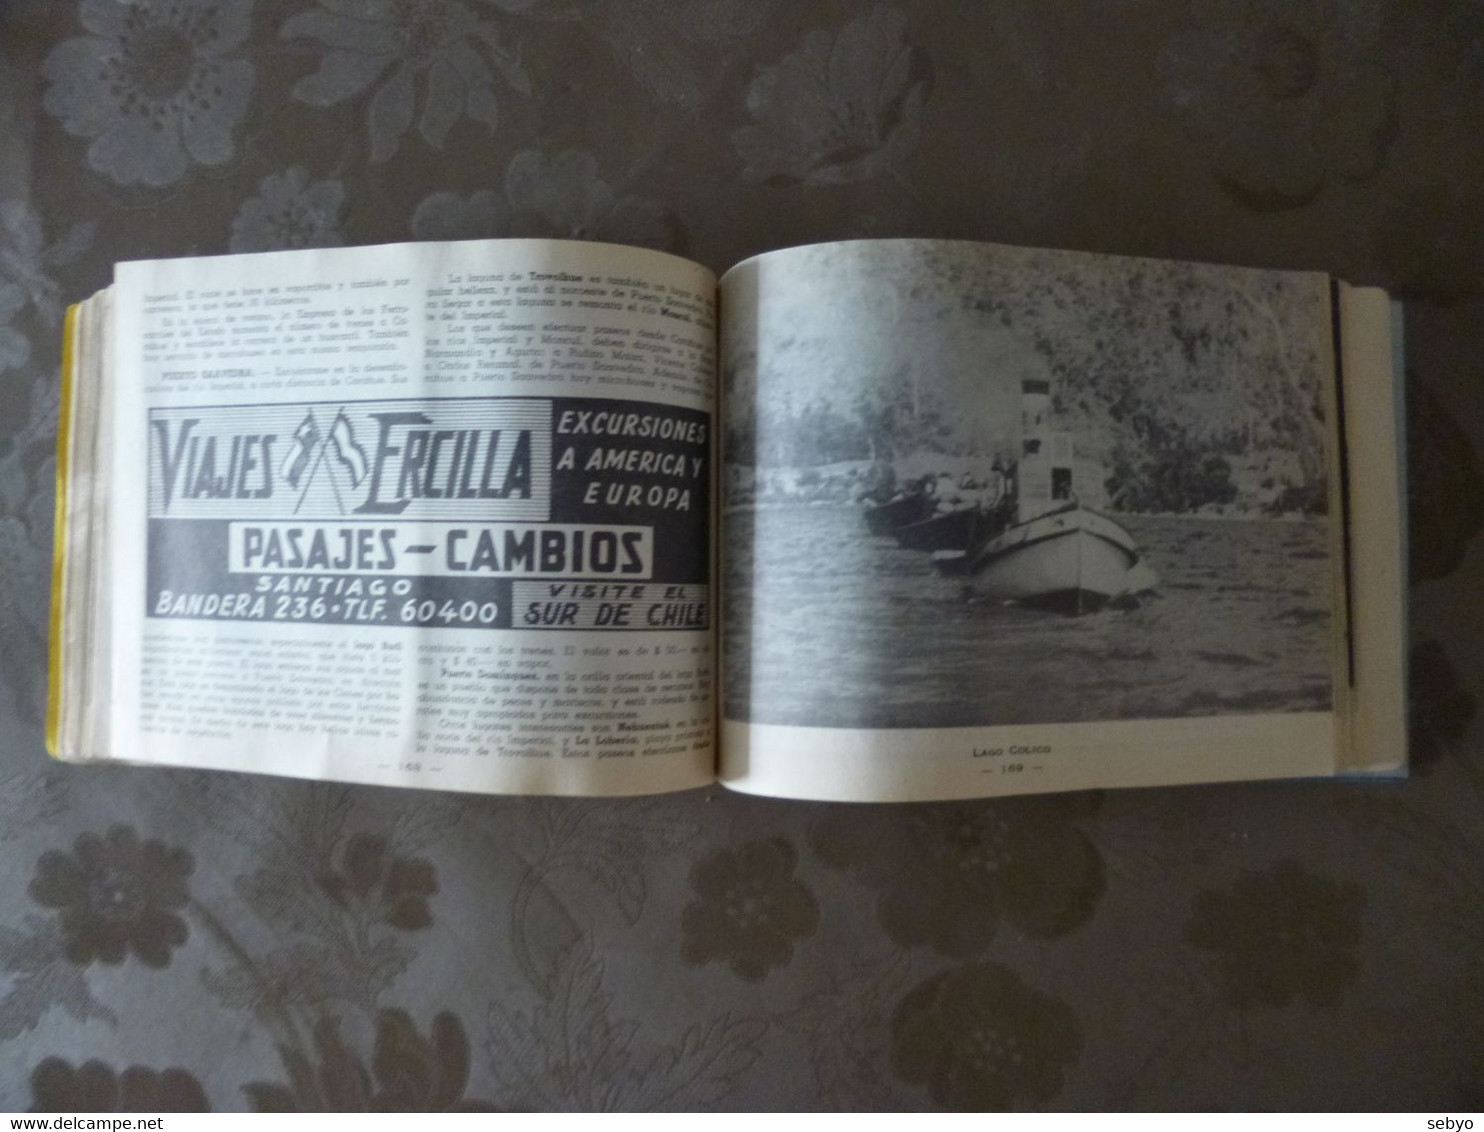 CHILI: Guide 1955. Guia del veraneante 1955.